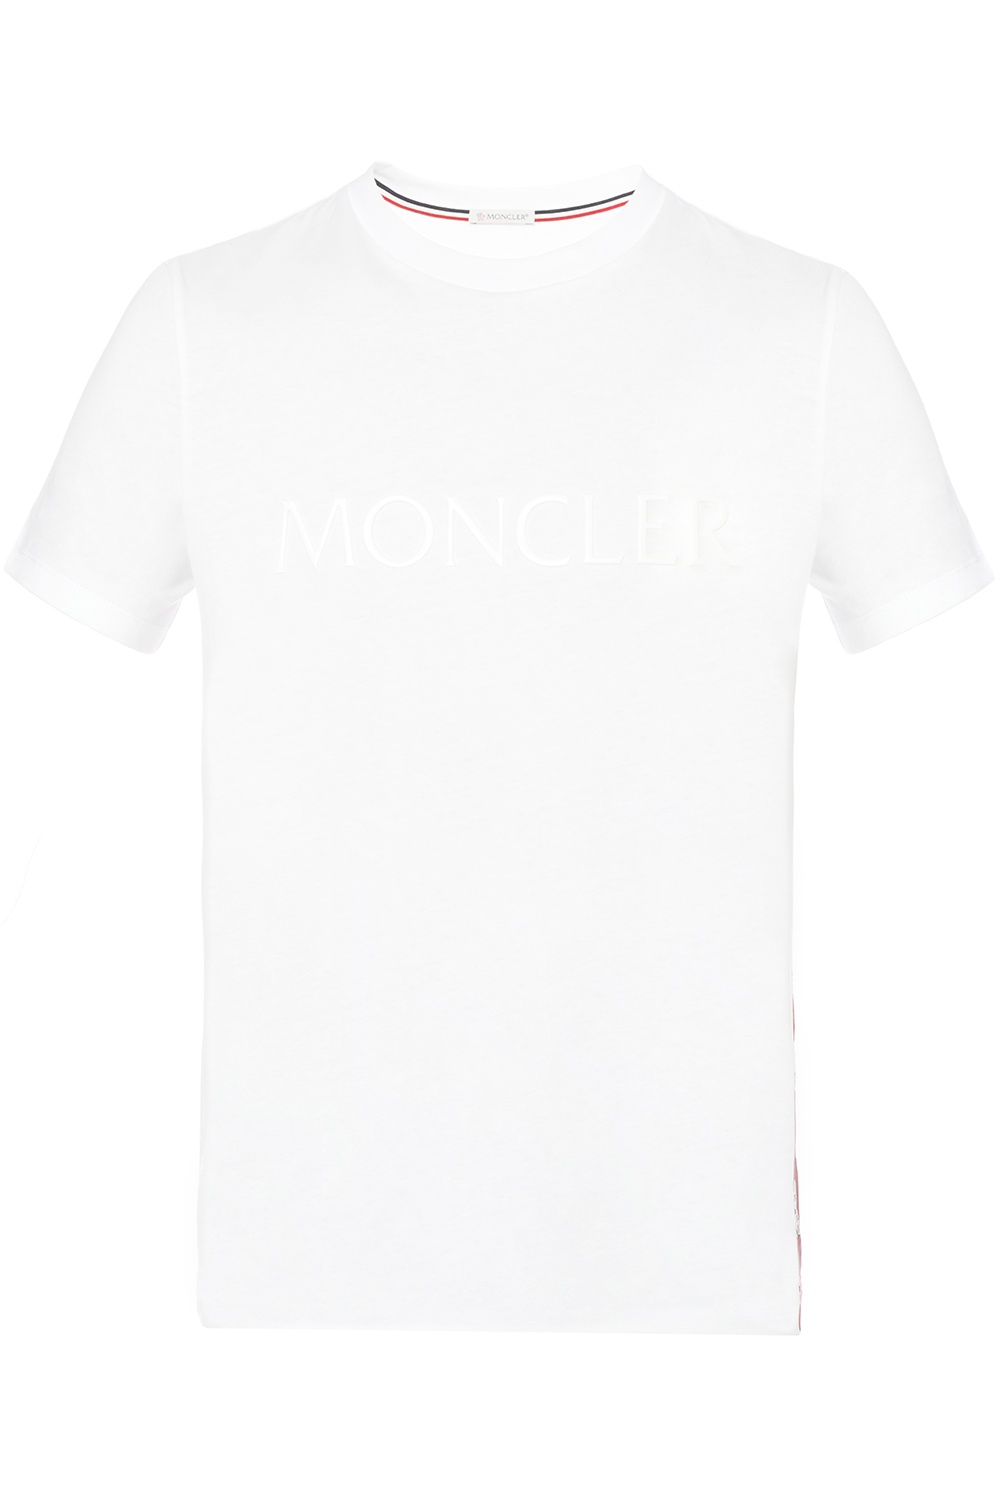 Moncler Logo T-shirt | Men's Clothing | Vitkac